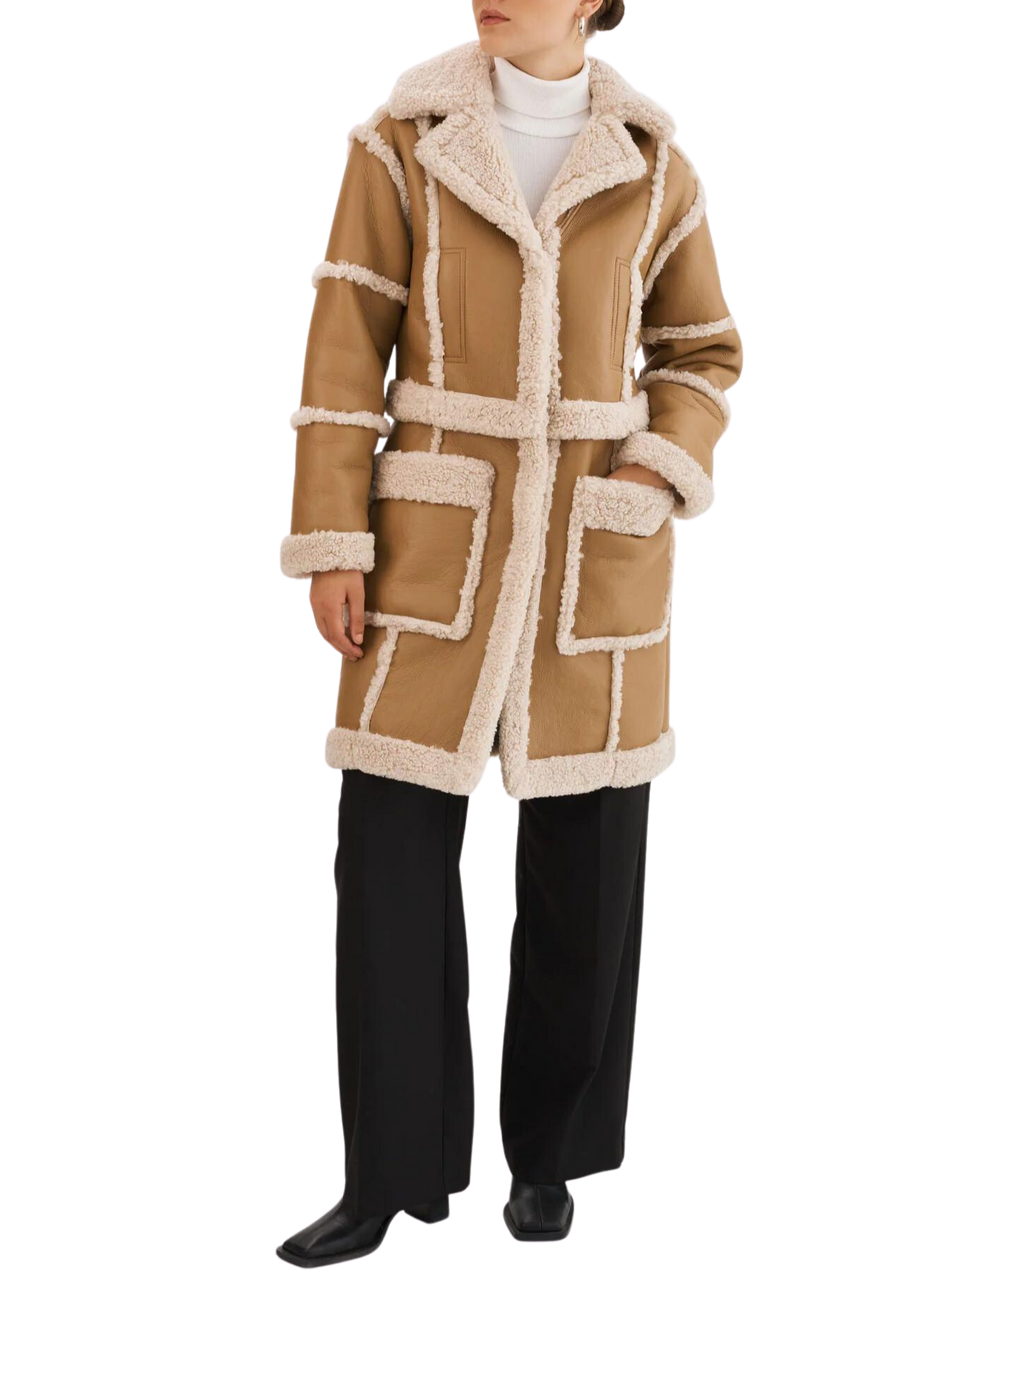 Mariane coat